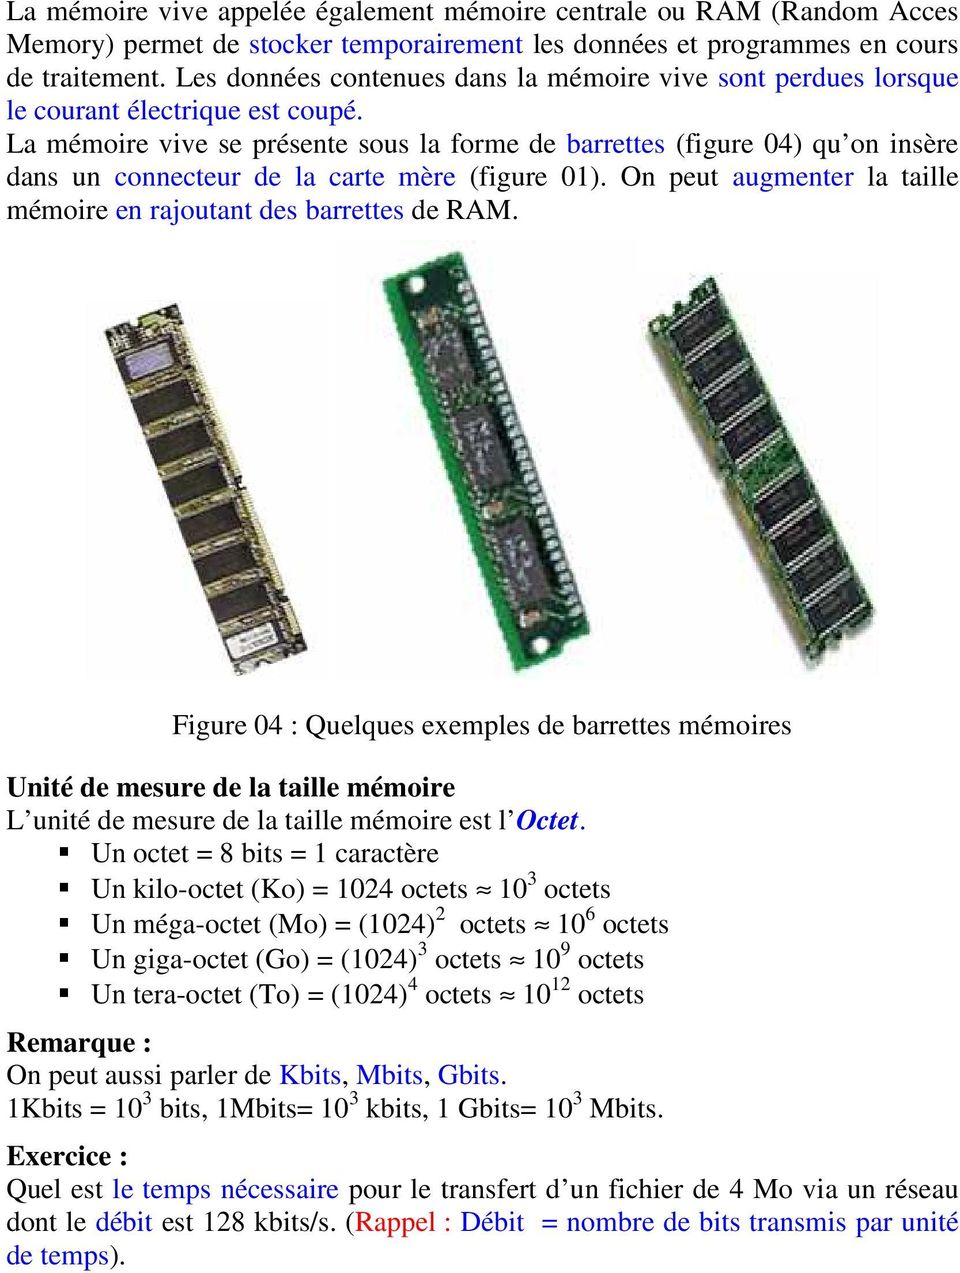 La mémoire vive se présente sous la forme de barrettes (figure 04) qu on insère dans un connecteur de la carte mère (figure 01). On peut augmenter la taille mémoire en rajoutant des barrettes de RAM.